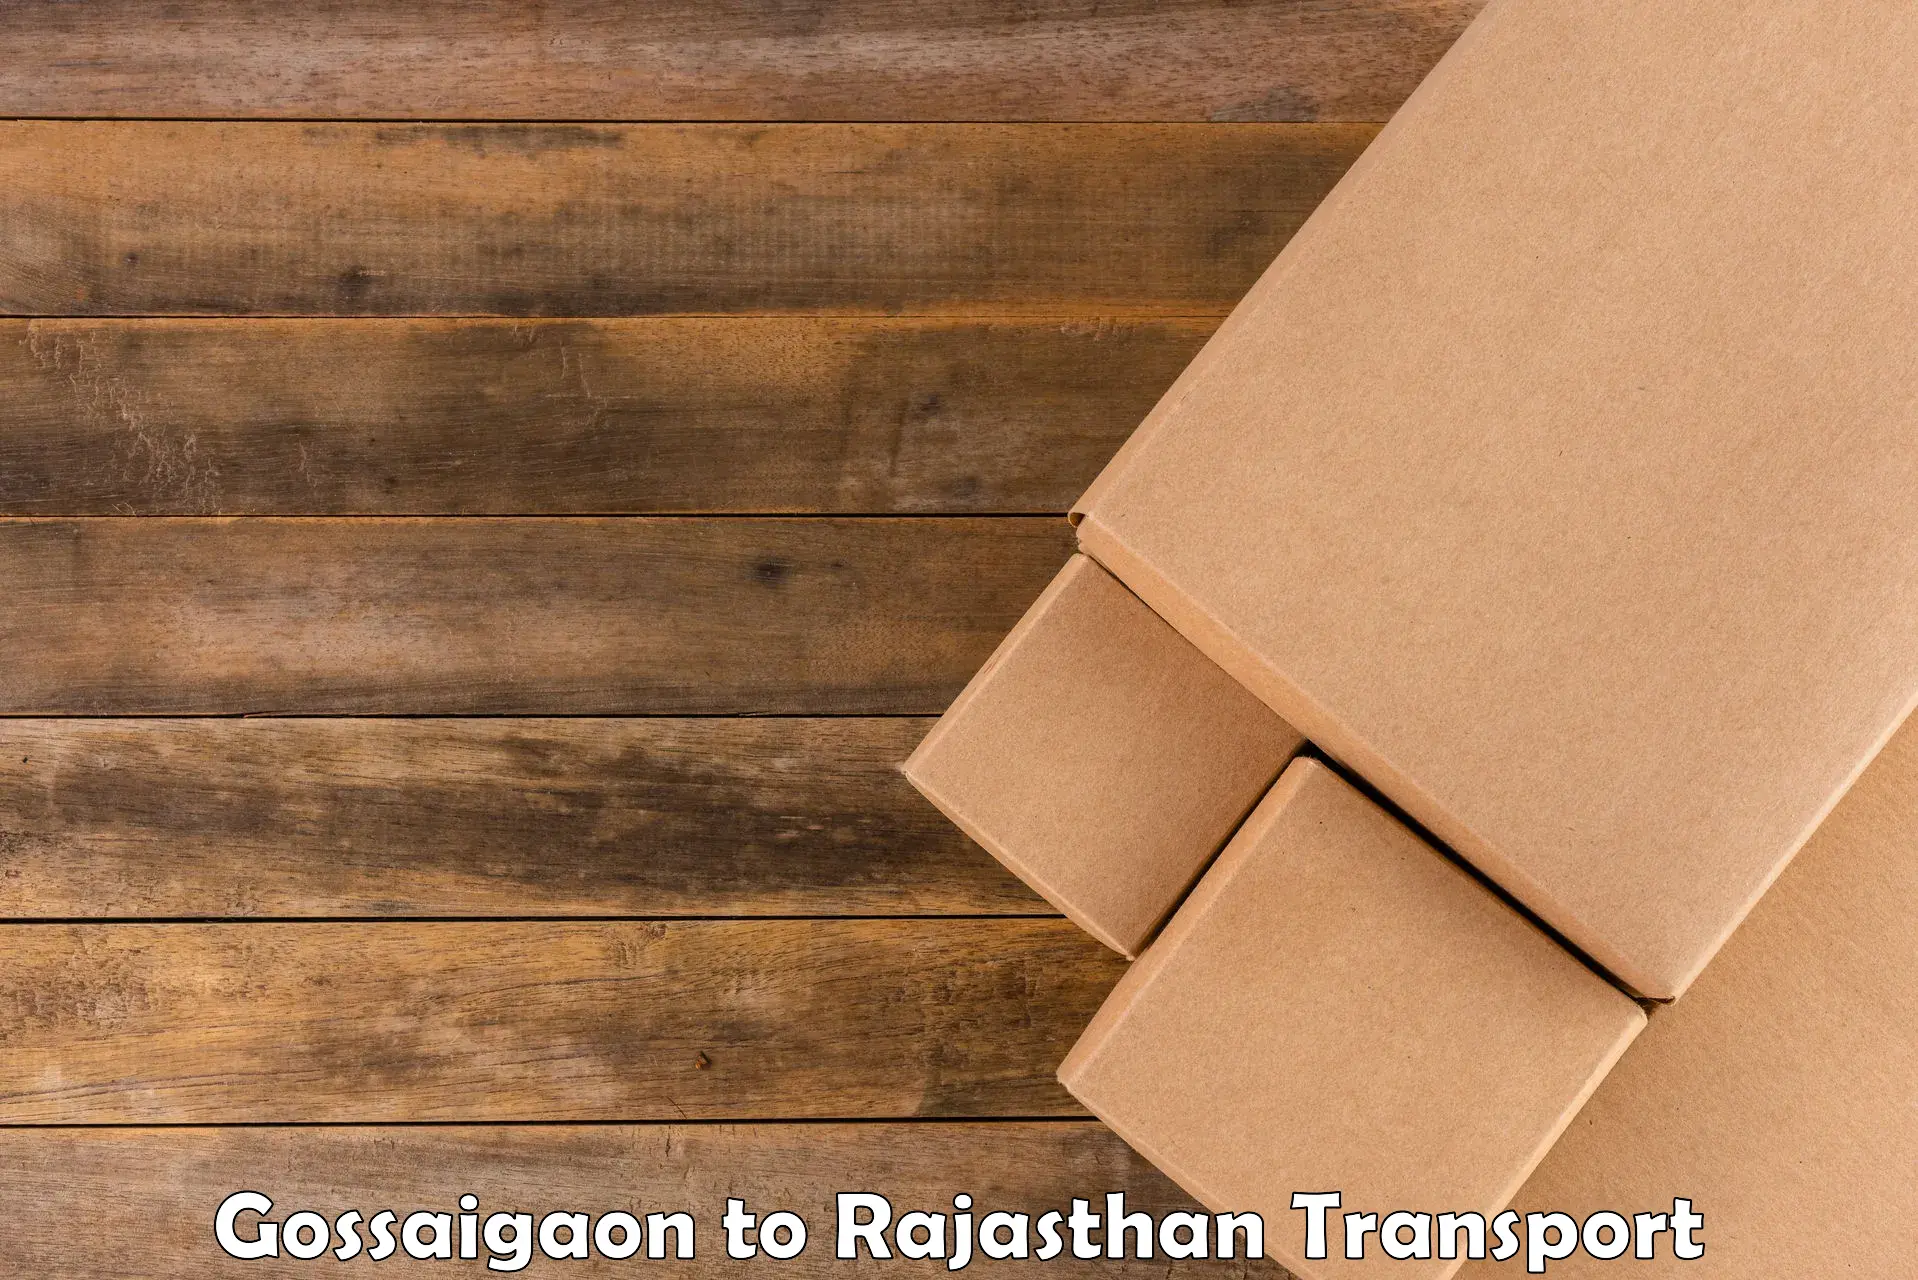 Furniture transport service Gossaigaon to Bikaner